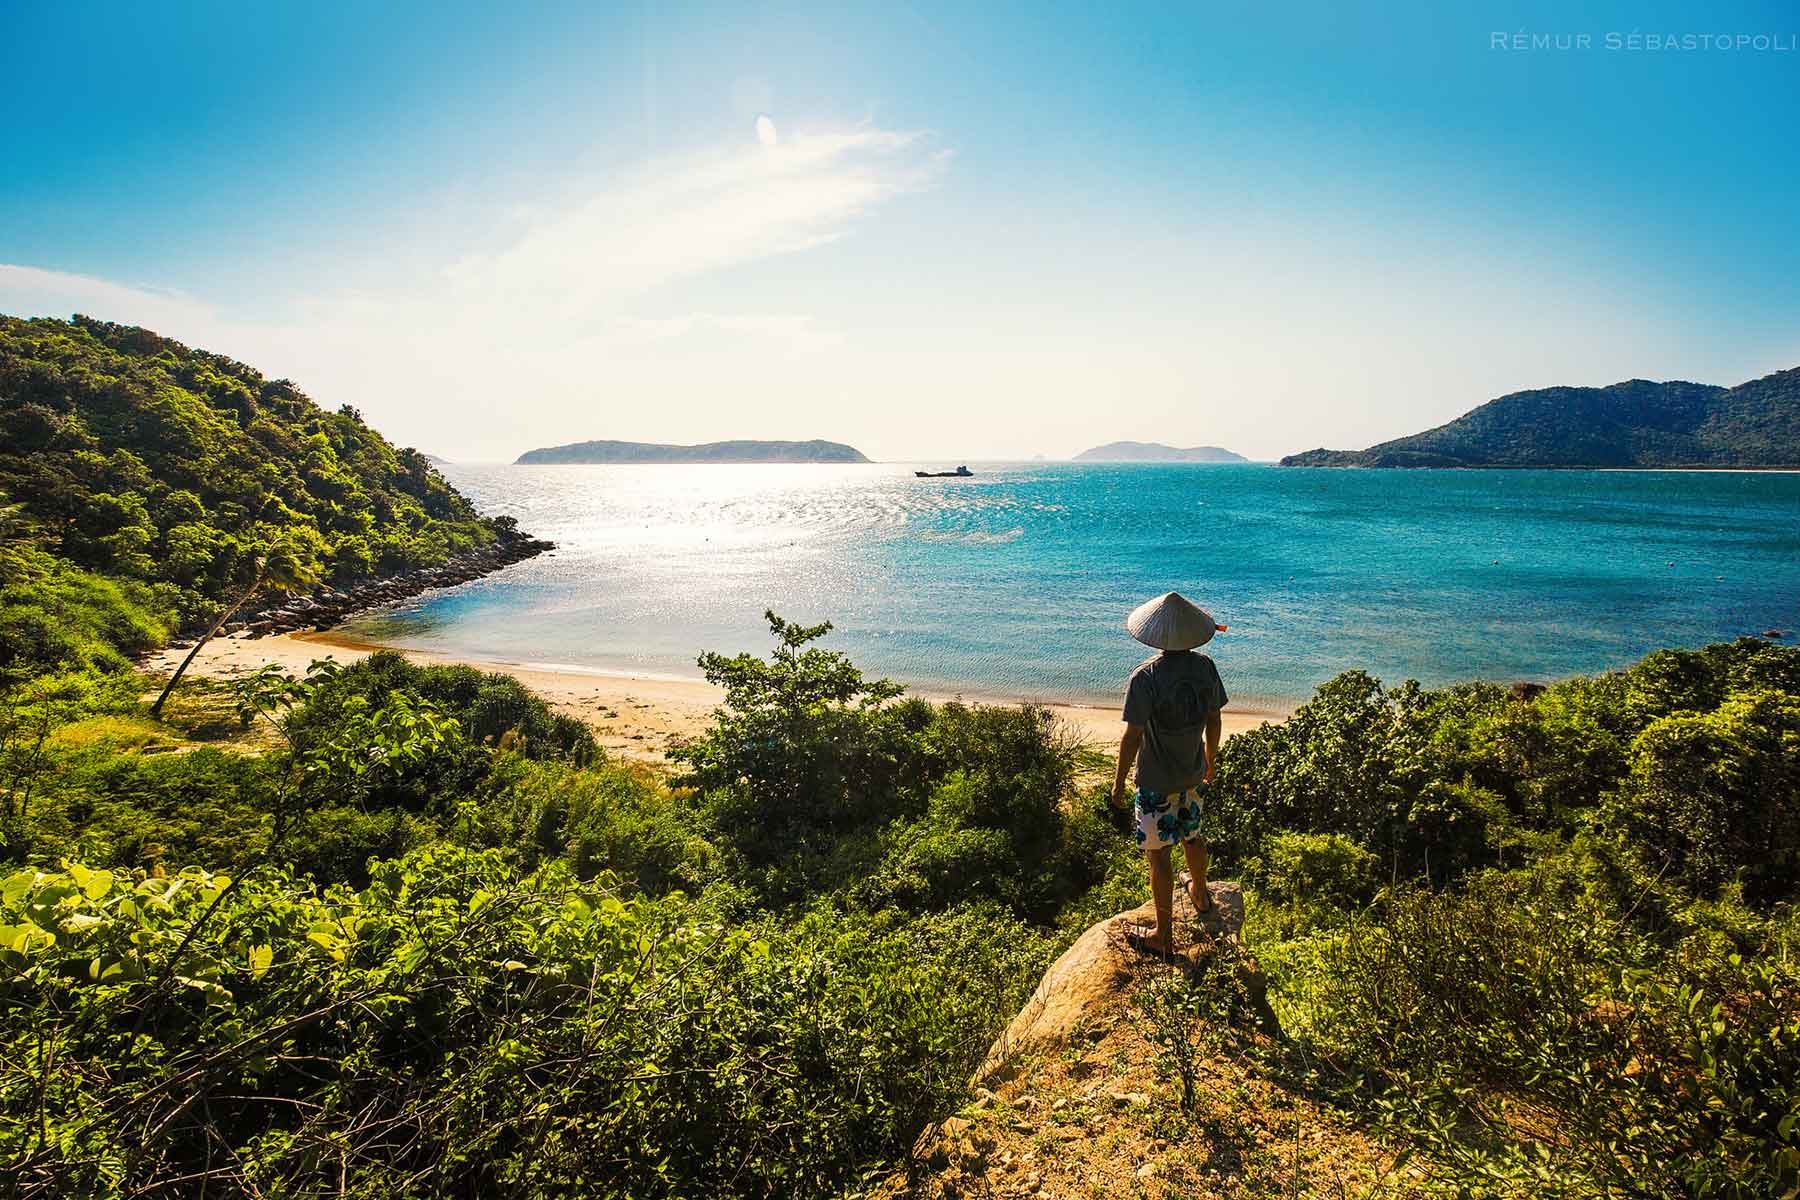 Cham Island in Vietnam